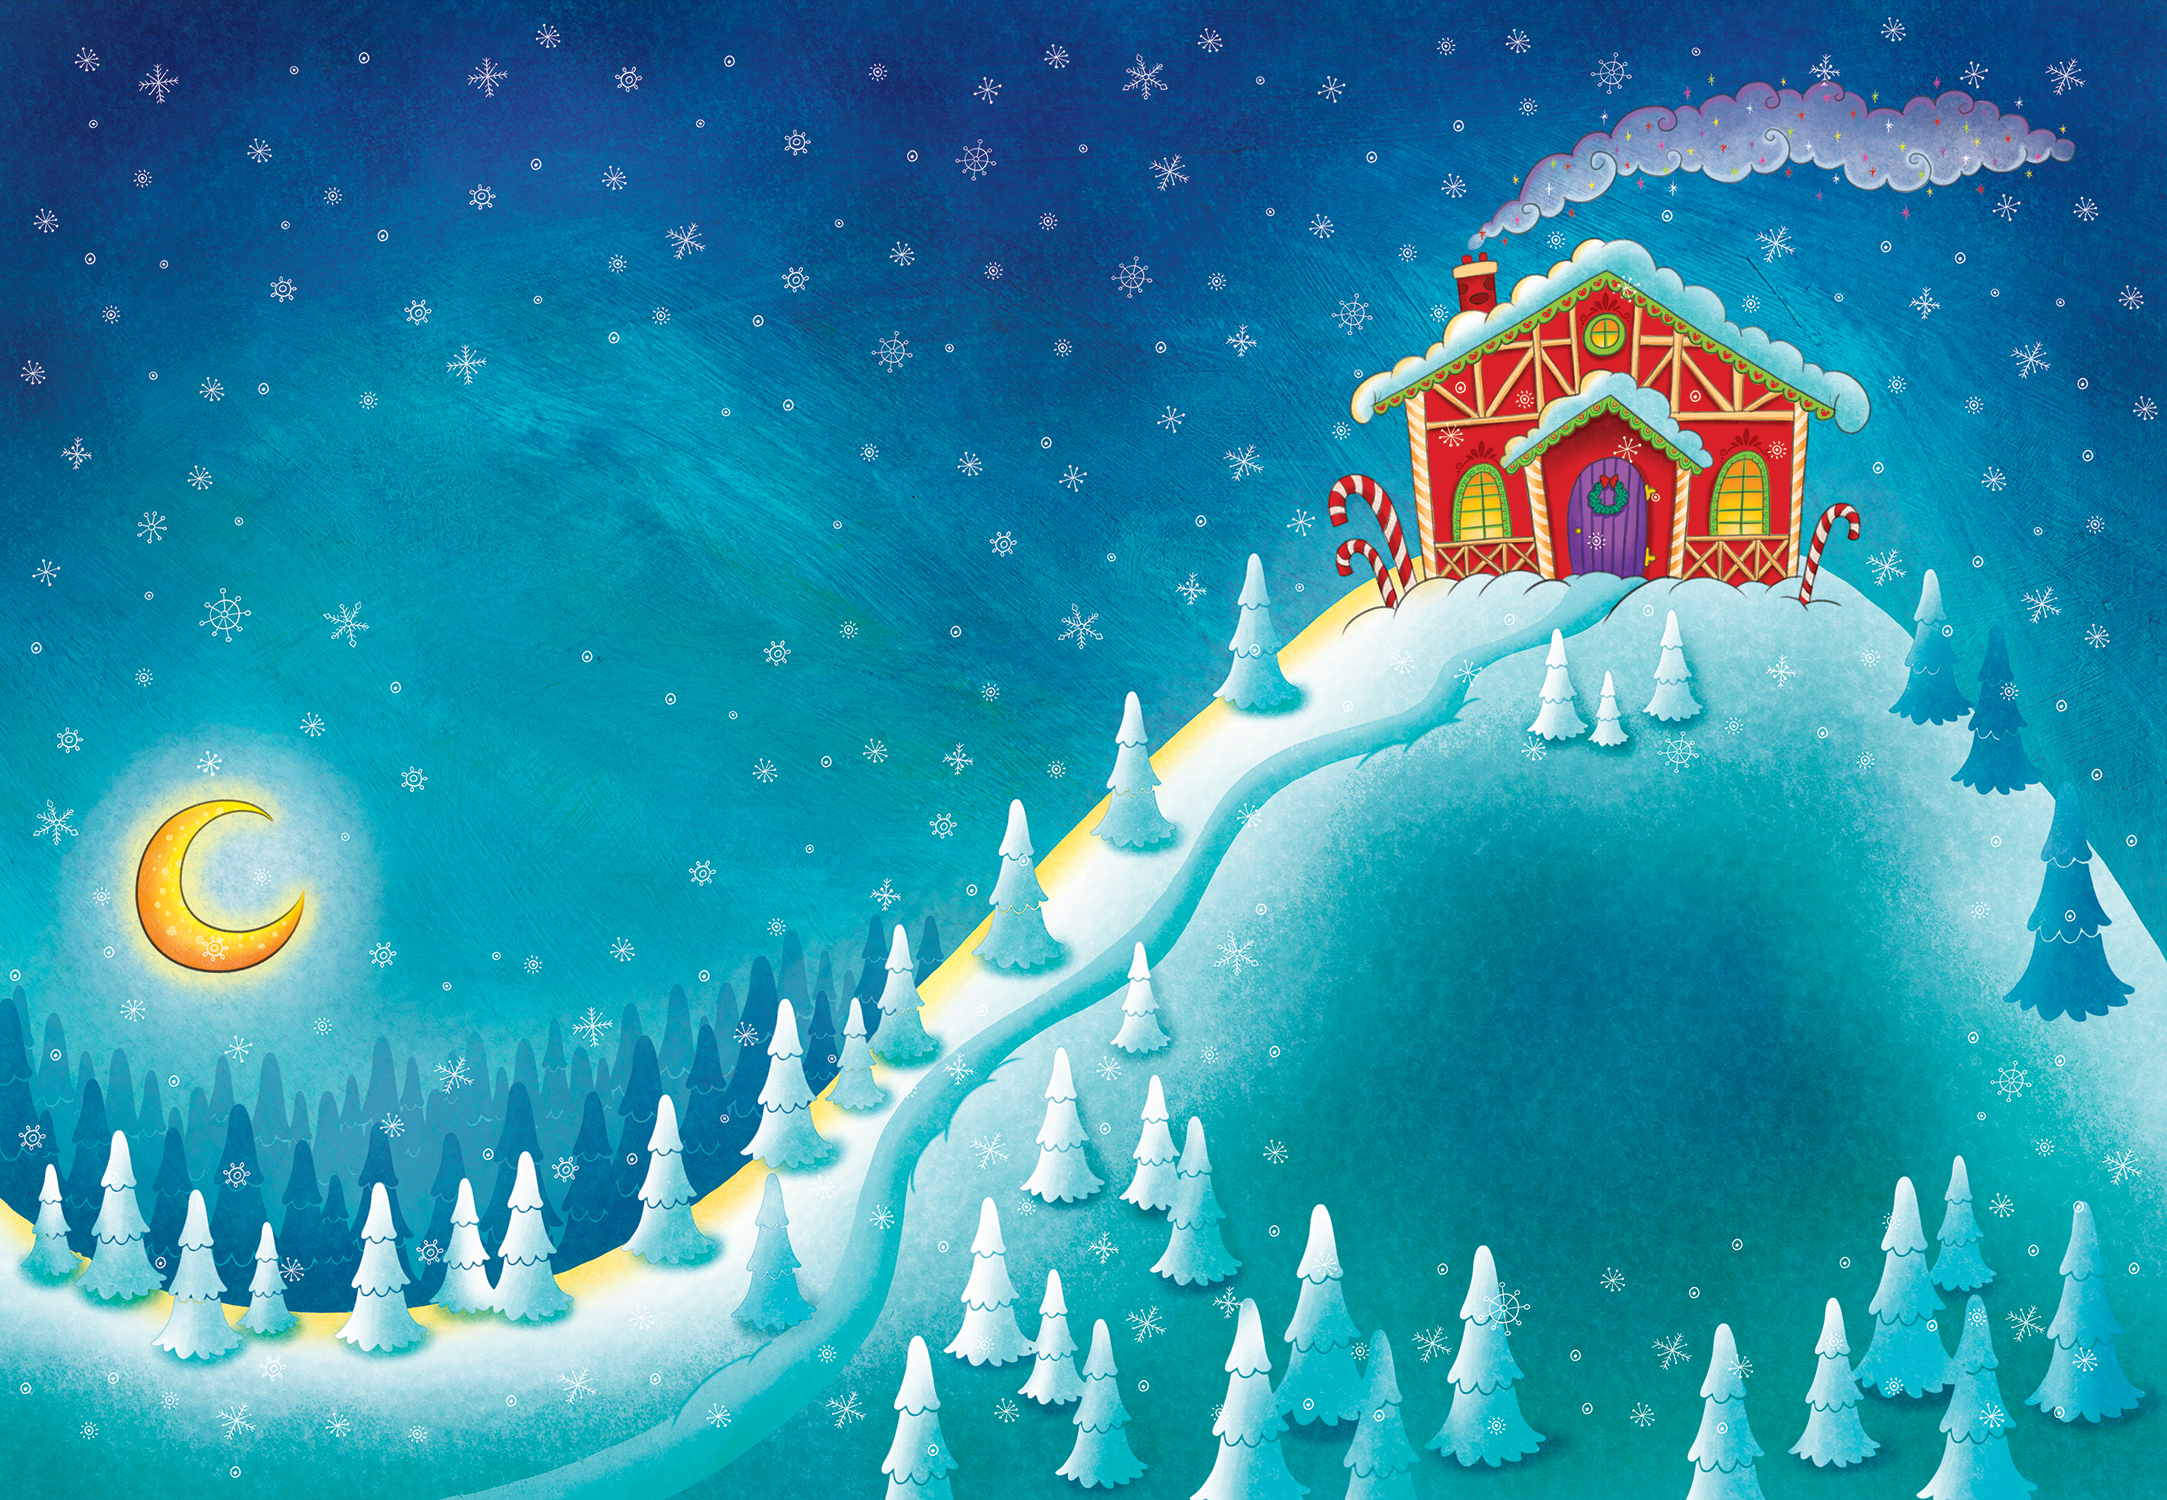 Album pour enfant de contes de Noël paru chez Pomango et illustré par Isabelle Charbonneau